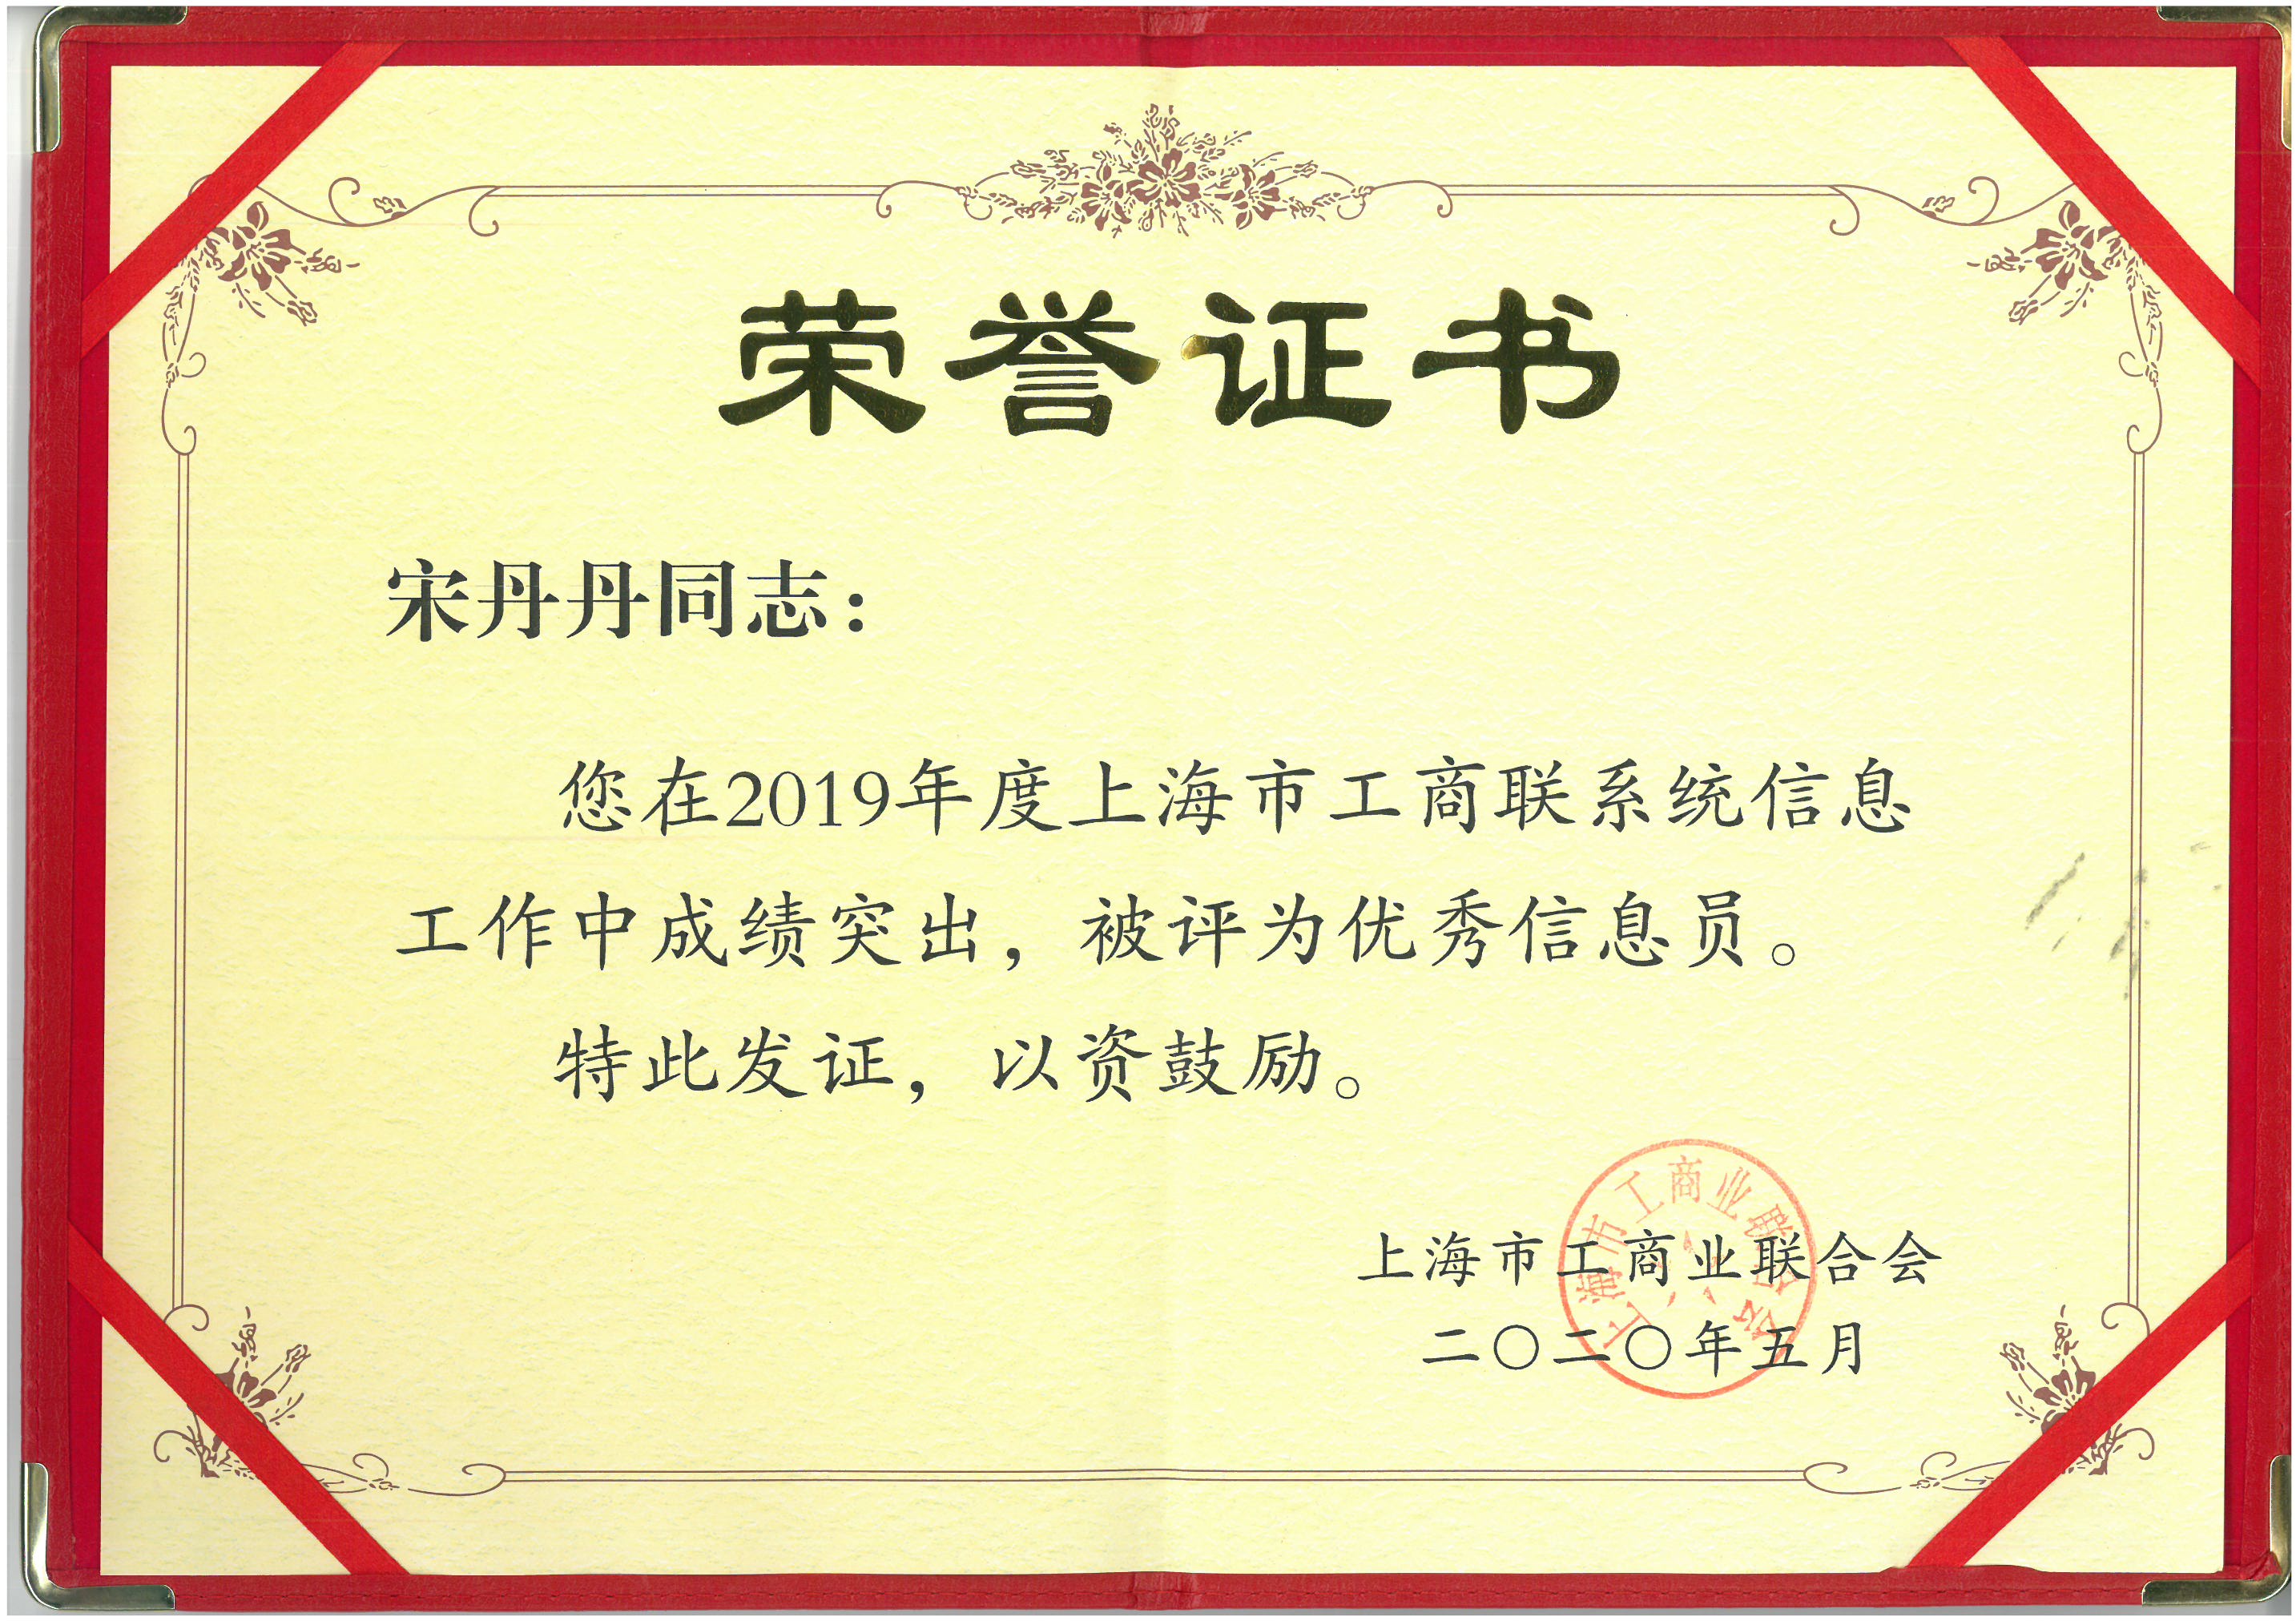 企福集团市场营销部经理宋丹丹被评为“上海市工商联优秀信息员”